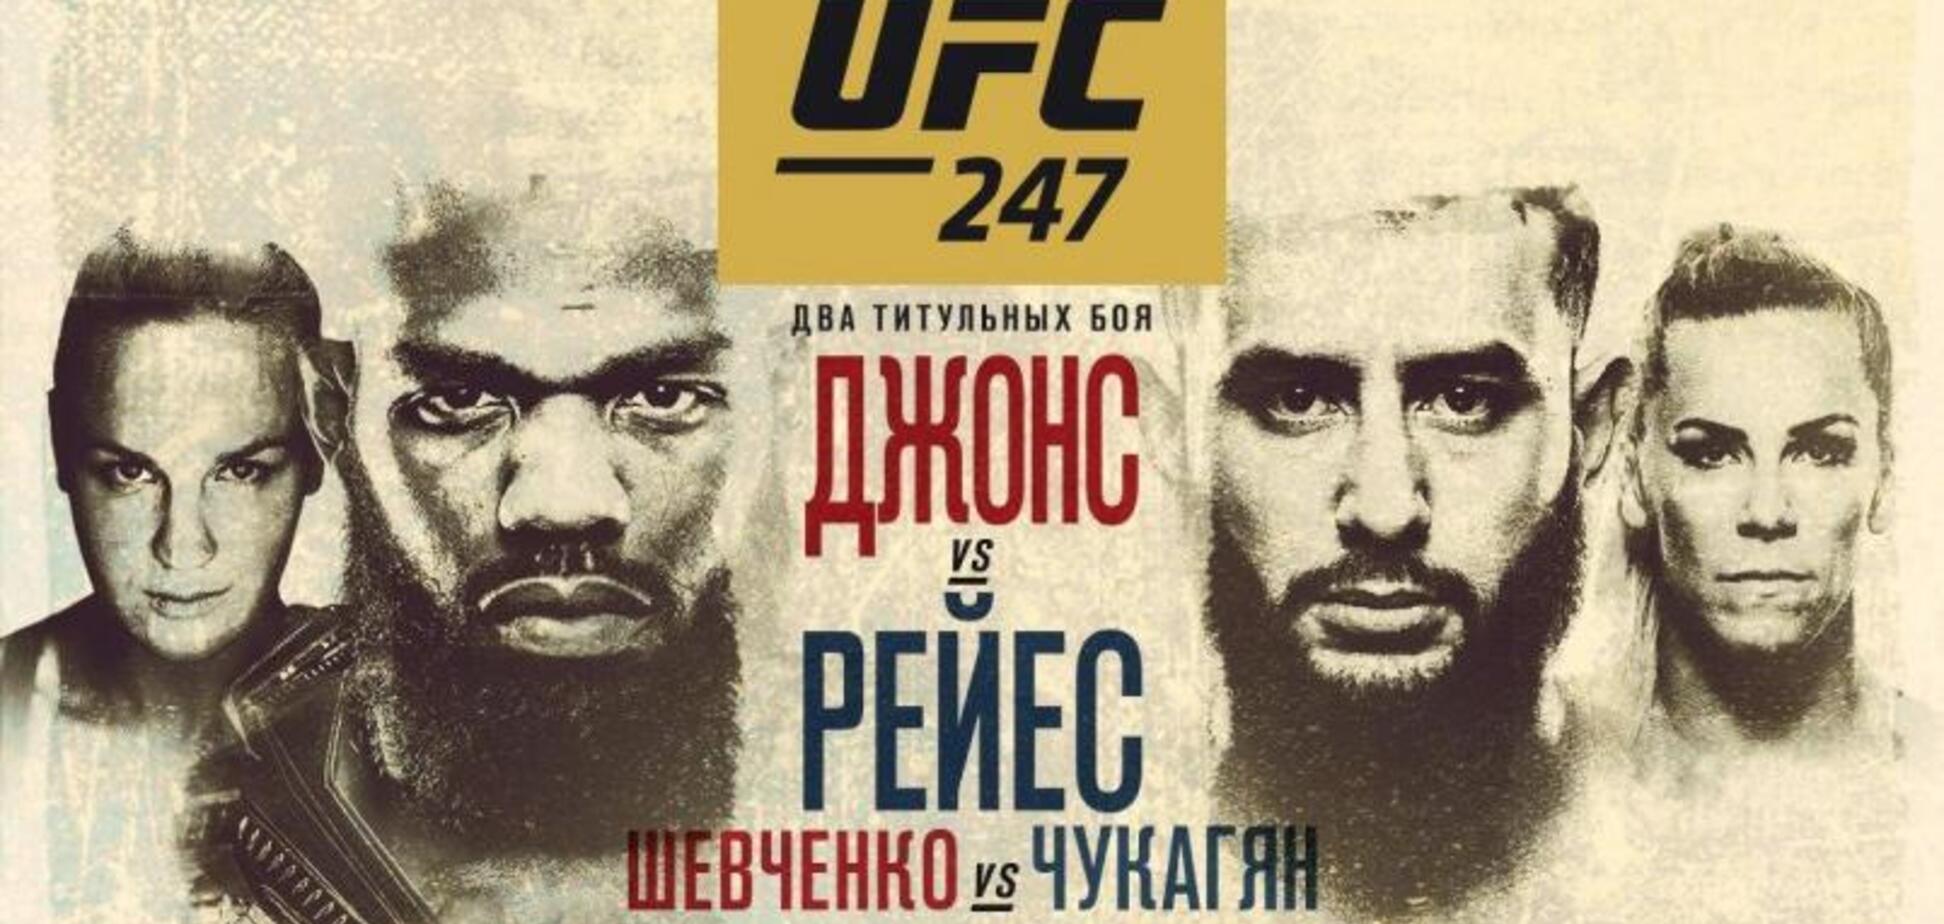 UFC 247: де дивитися онлайн, на якому каналі бої Джонс – Рейєс і Шевченко – Чукагян